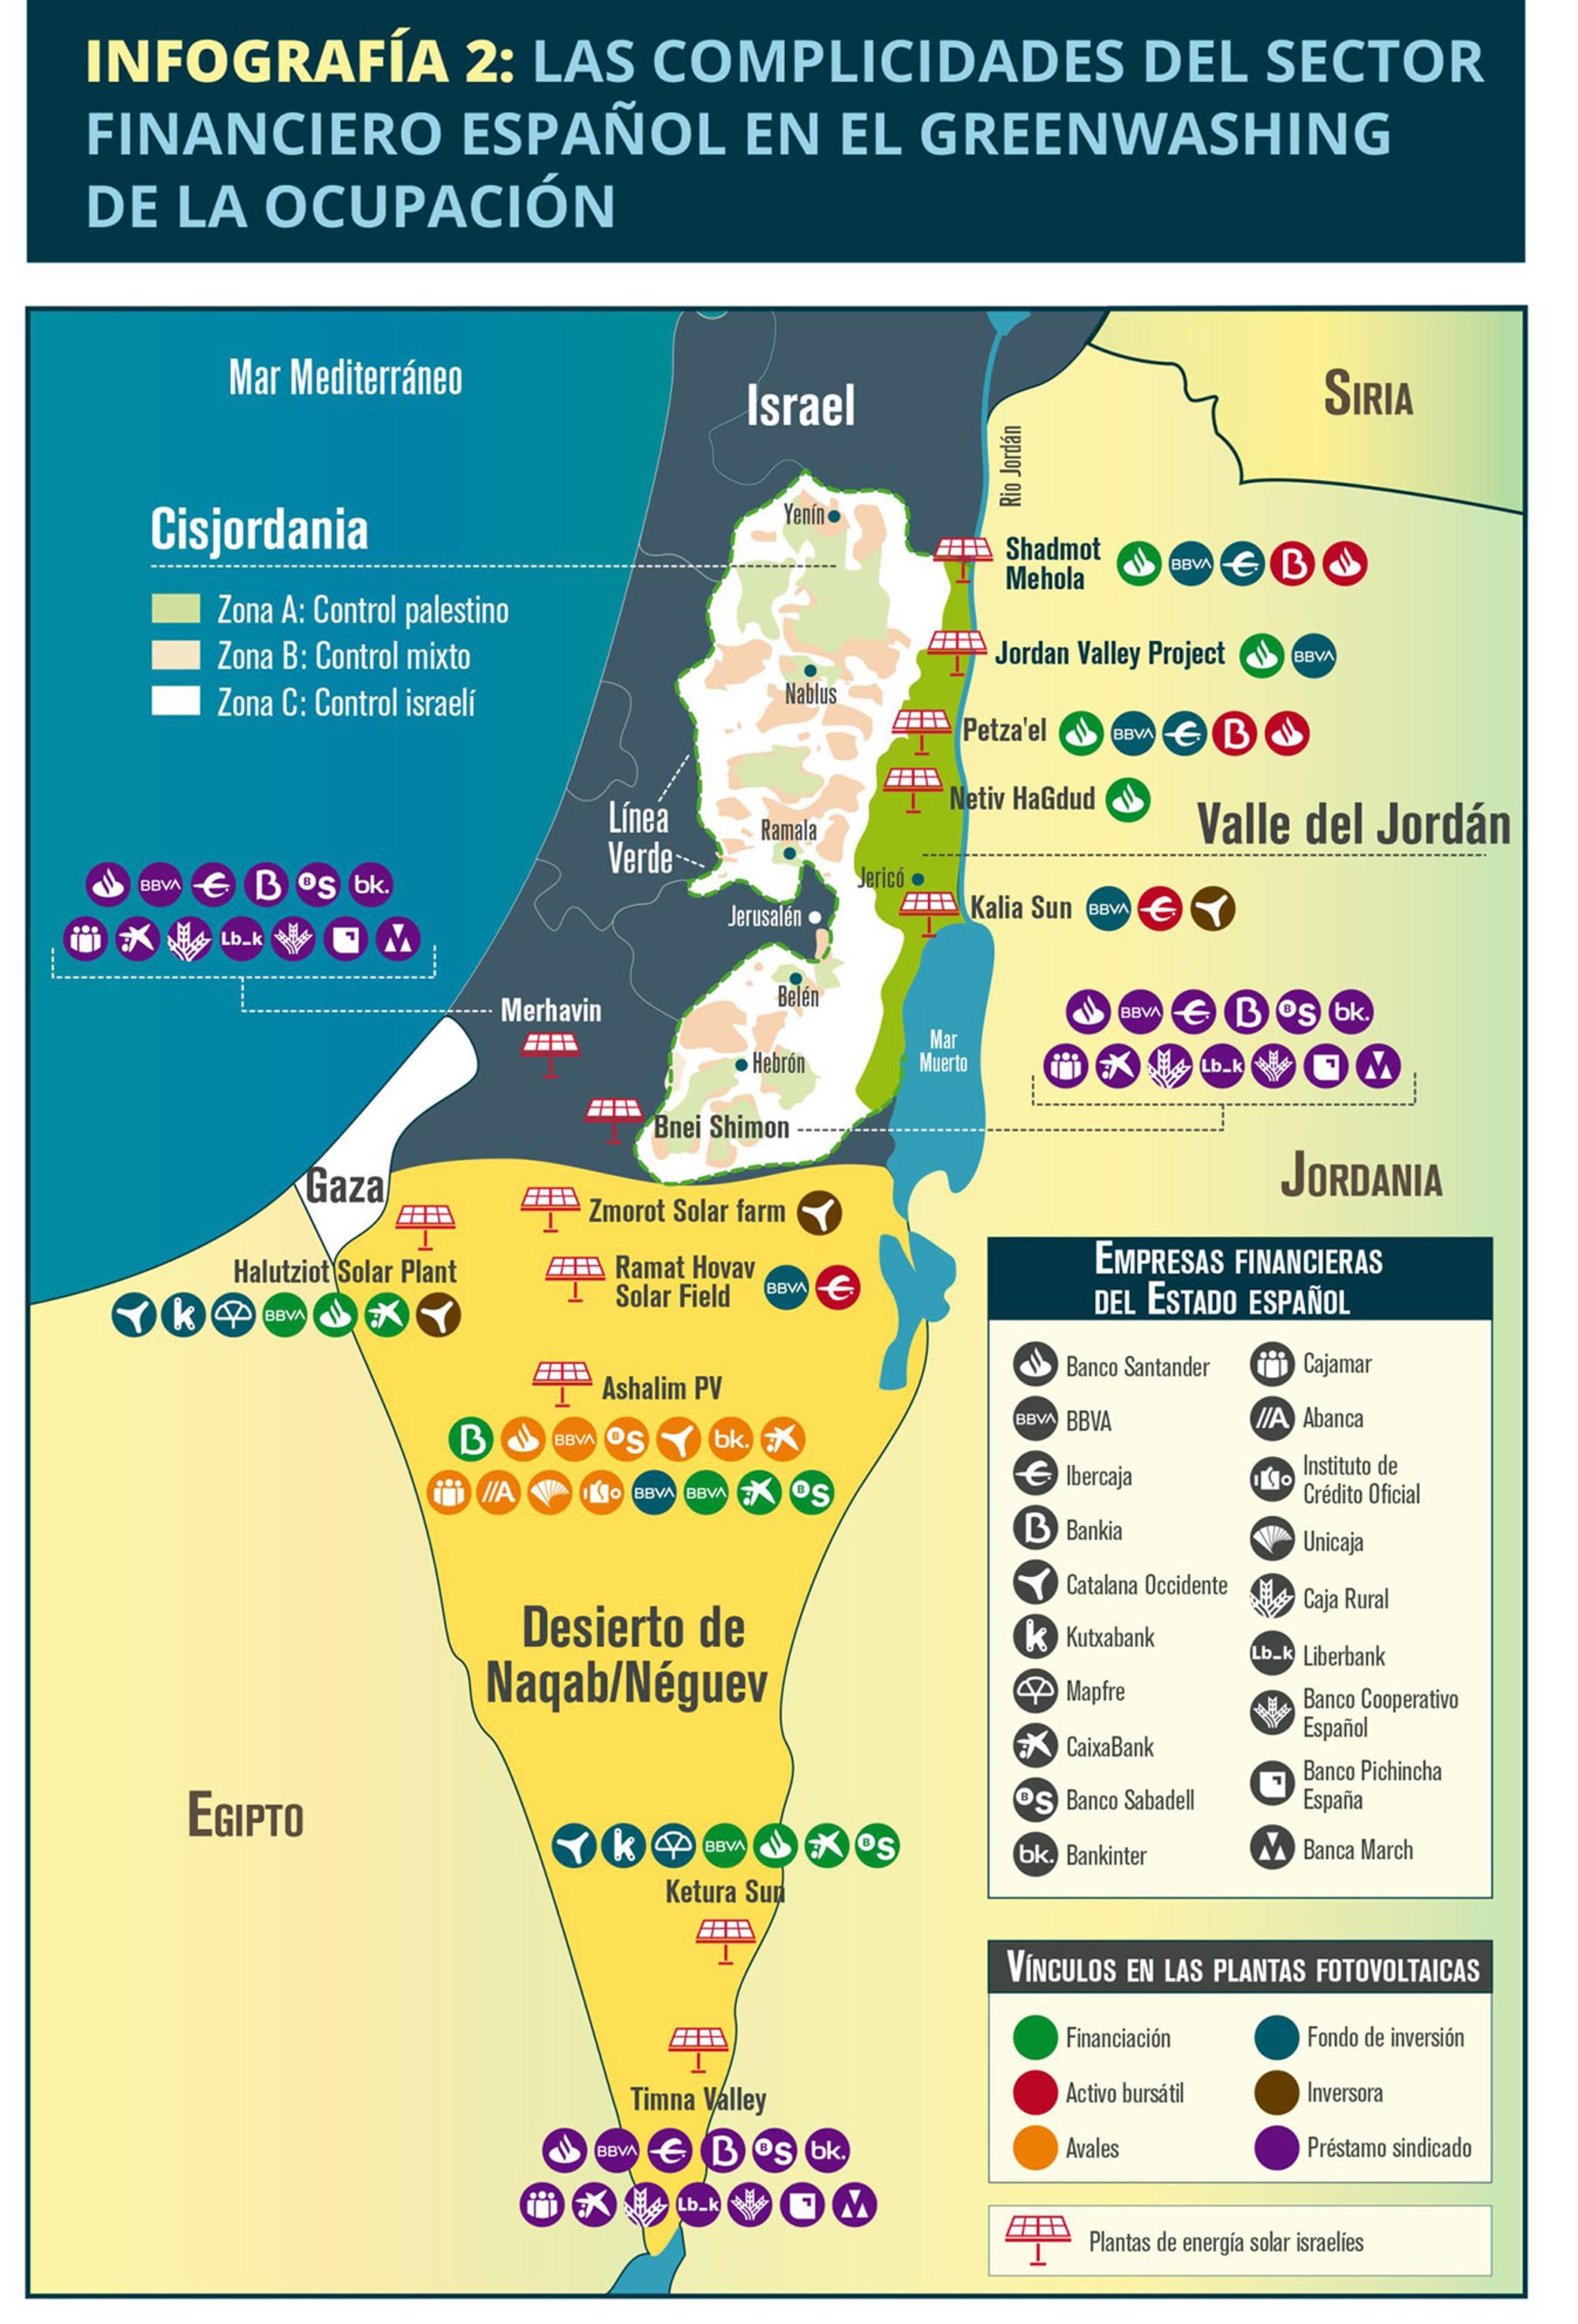 Infografia La complicidad del sector financiero español en la ocupación de Palestina 2